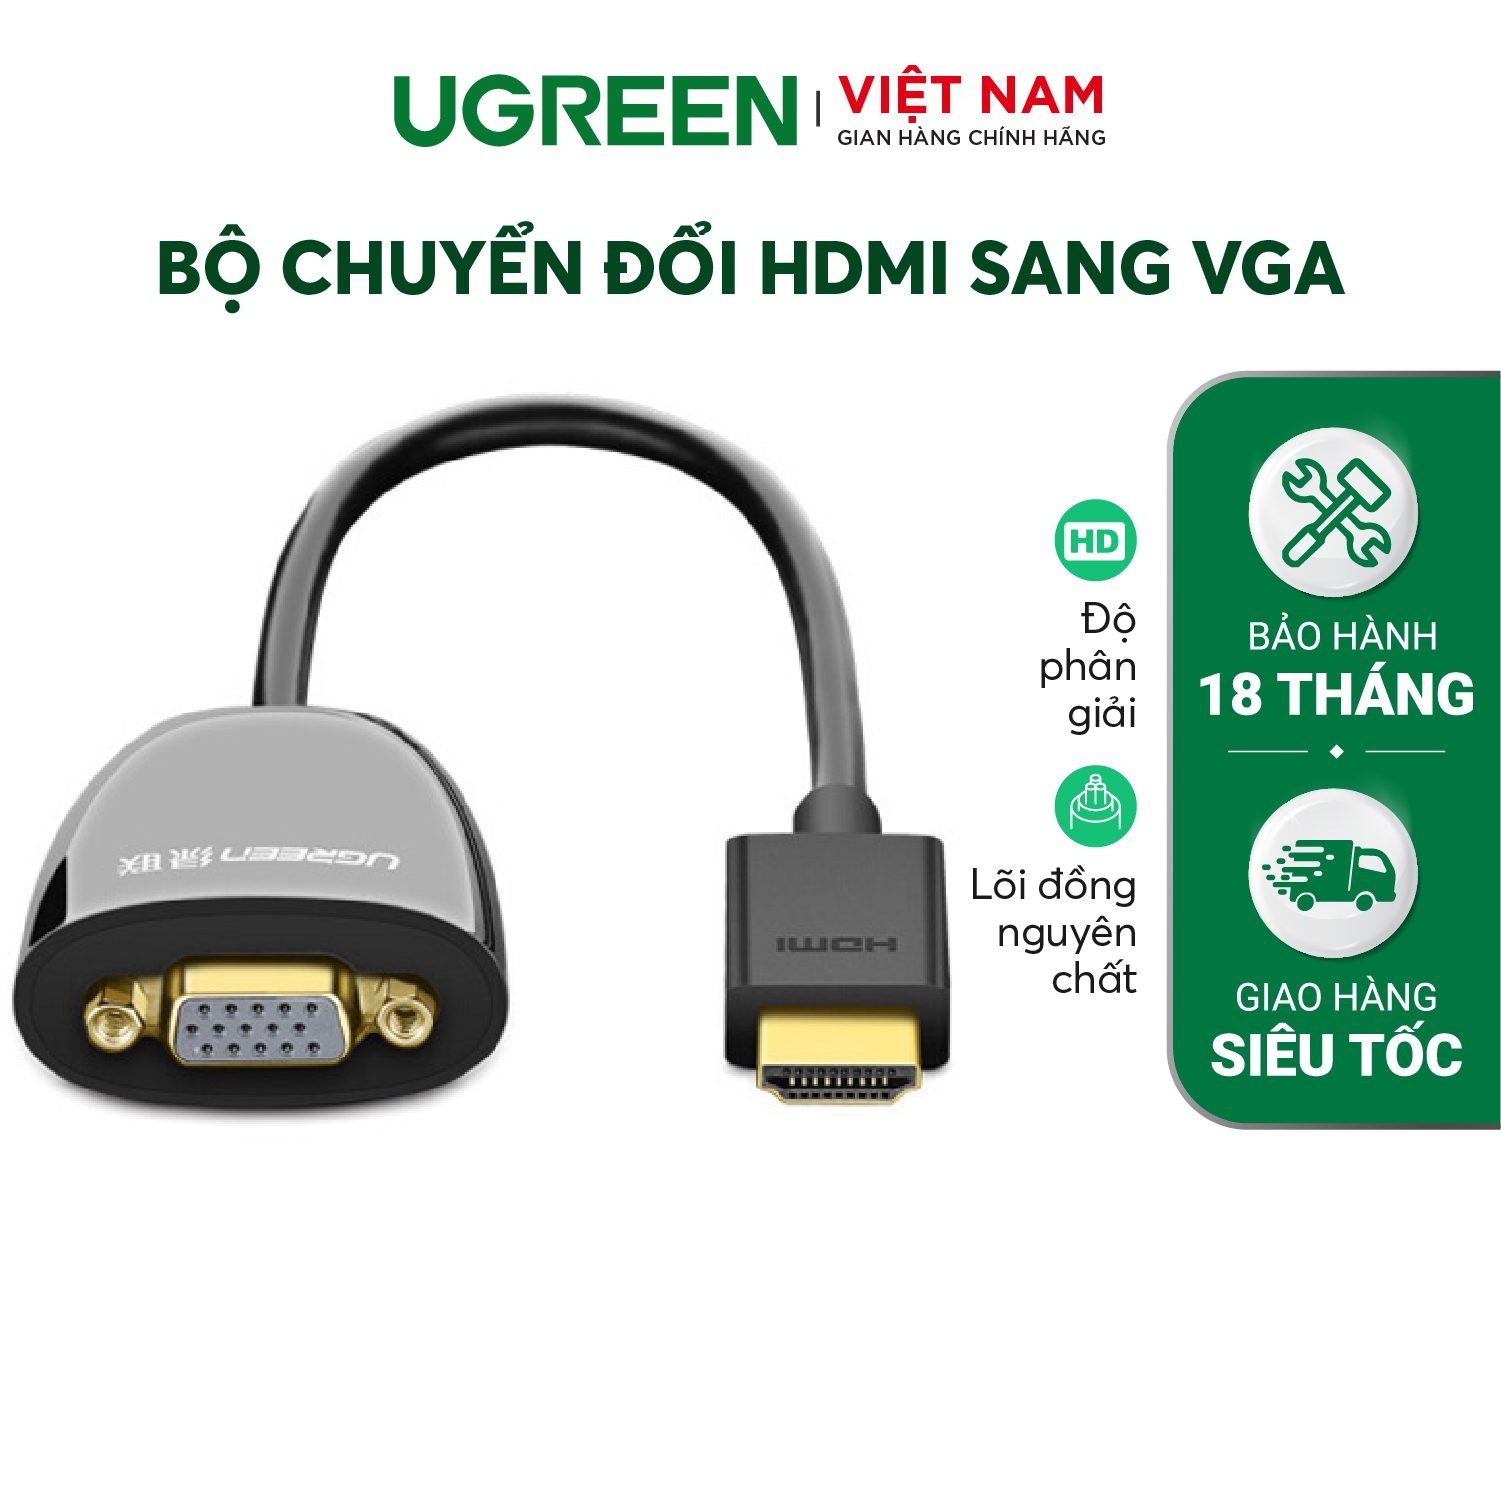 Bộ chuyển đổi HDMI sang VGA UGREEN MM102 Không có Audio, độ phân giải 1920*1080 60Hz (Max) dài 16cm – Ugreen Việt Nam